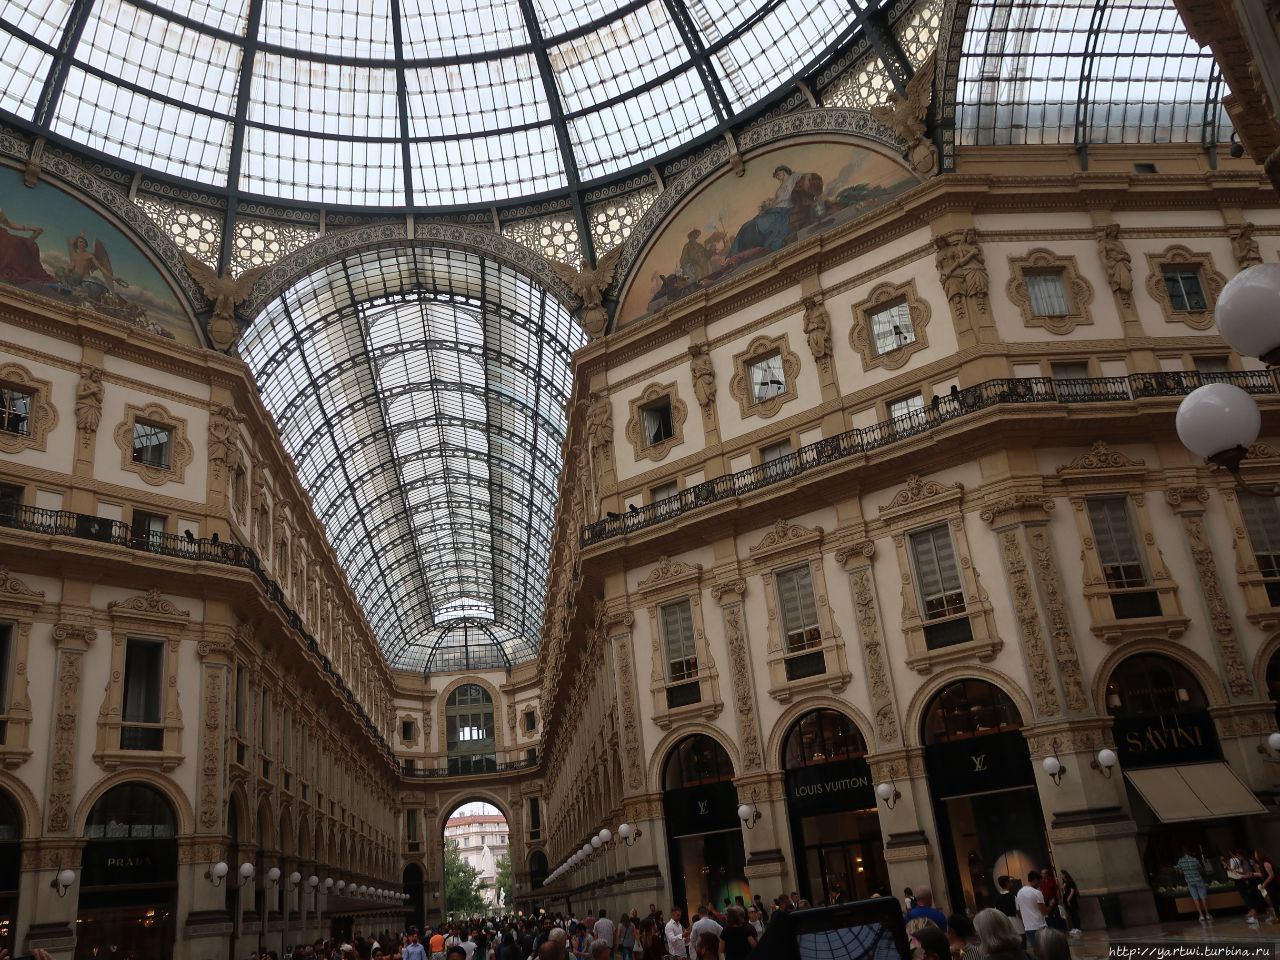 Галерея — один из первых в Европе пассажей. Галерея соединяет четыре галереи в форме креста с огромным куполом посредине. Милан, Италия